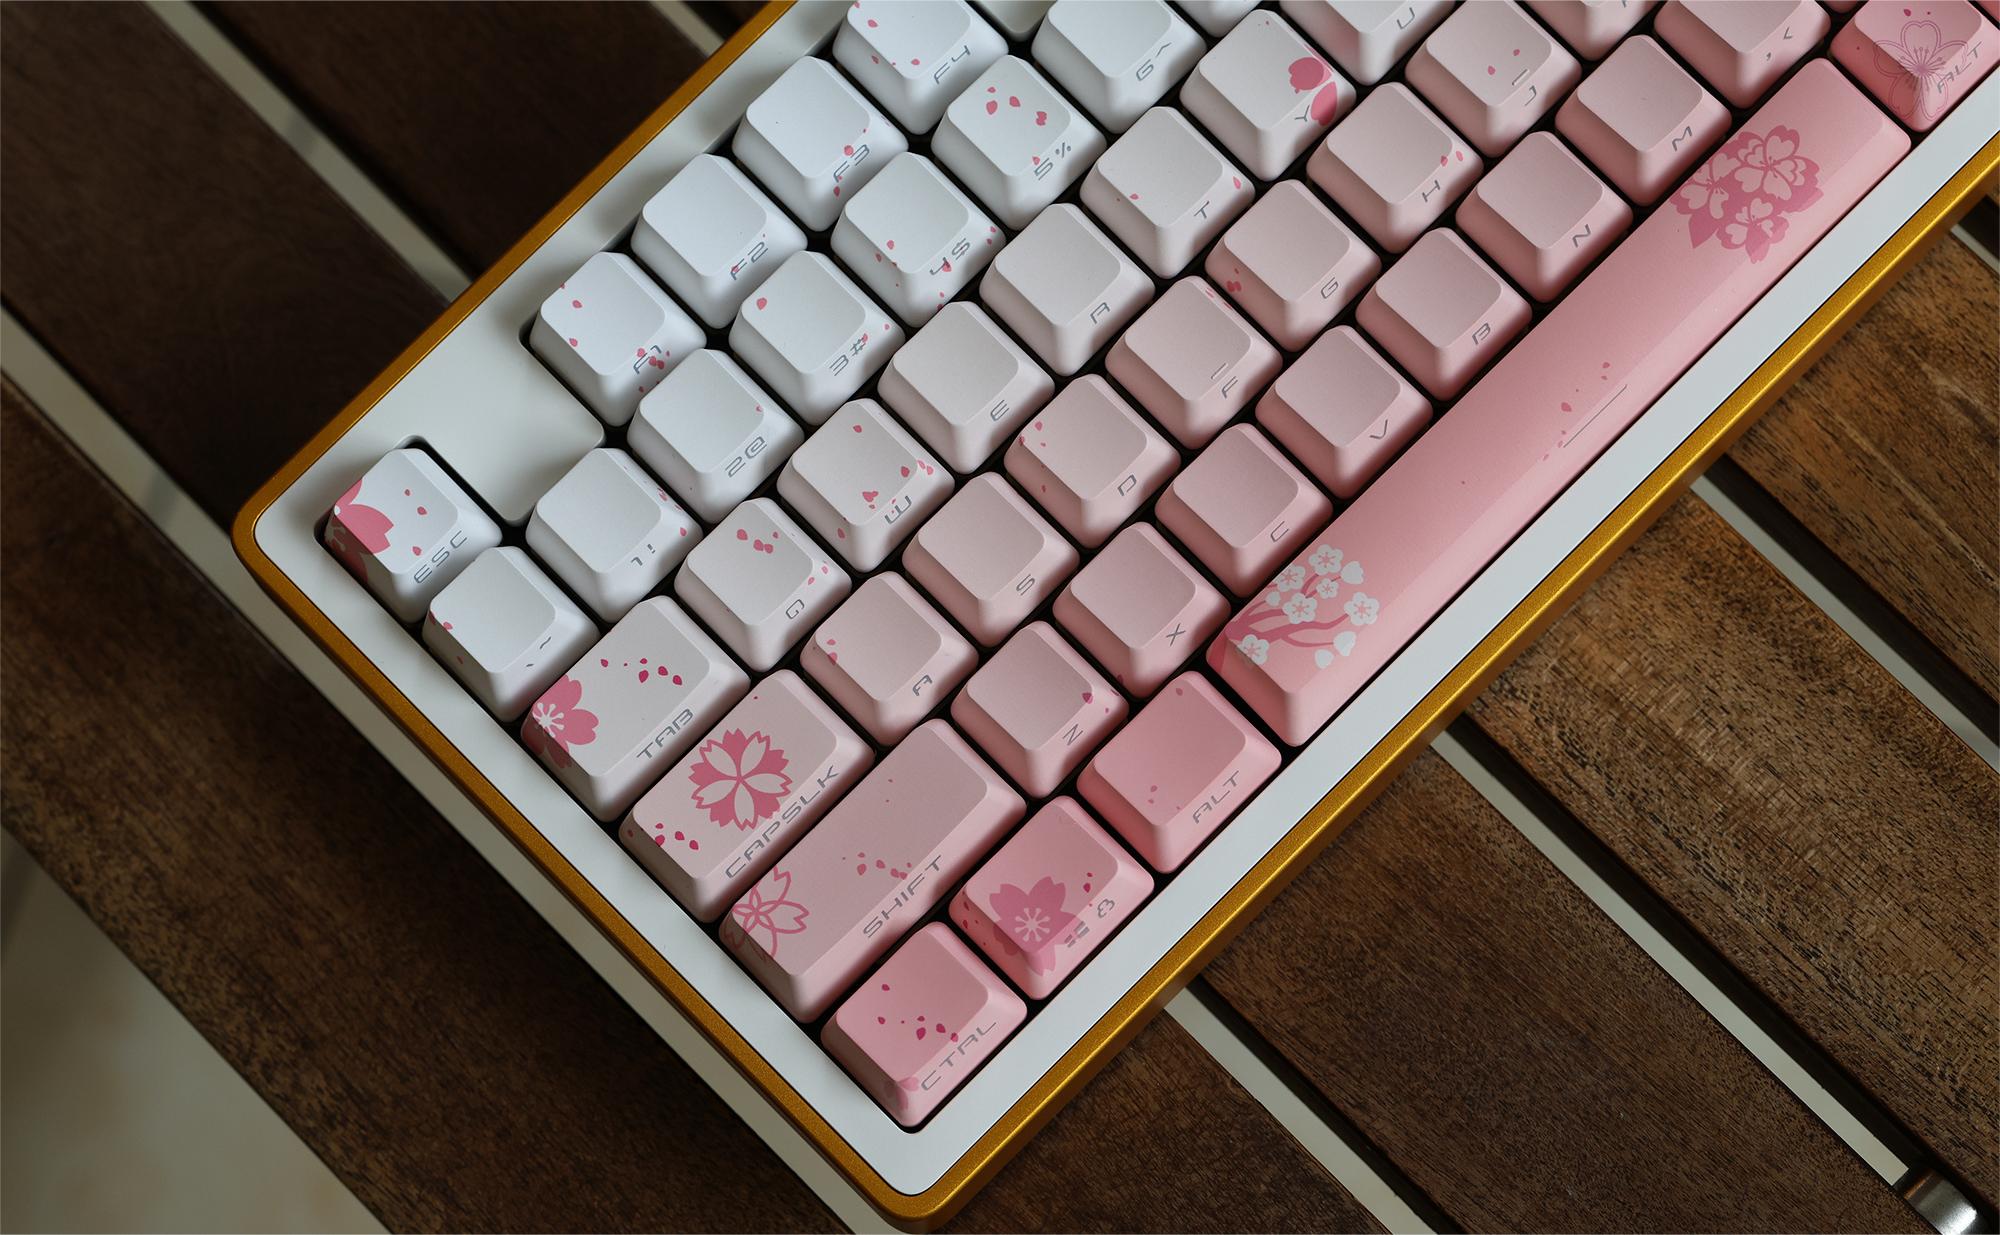 sakura-side-printed-oem-backlit-keycaps-sets